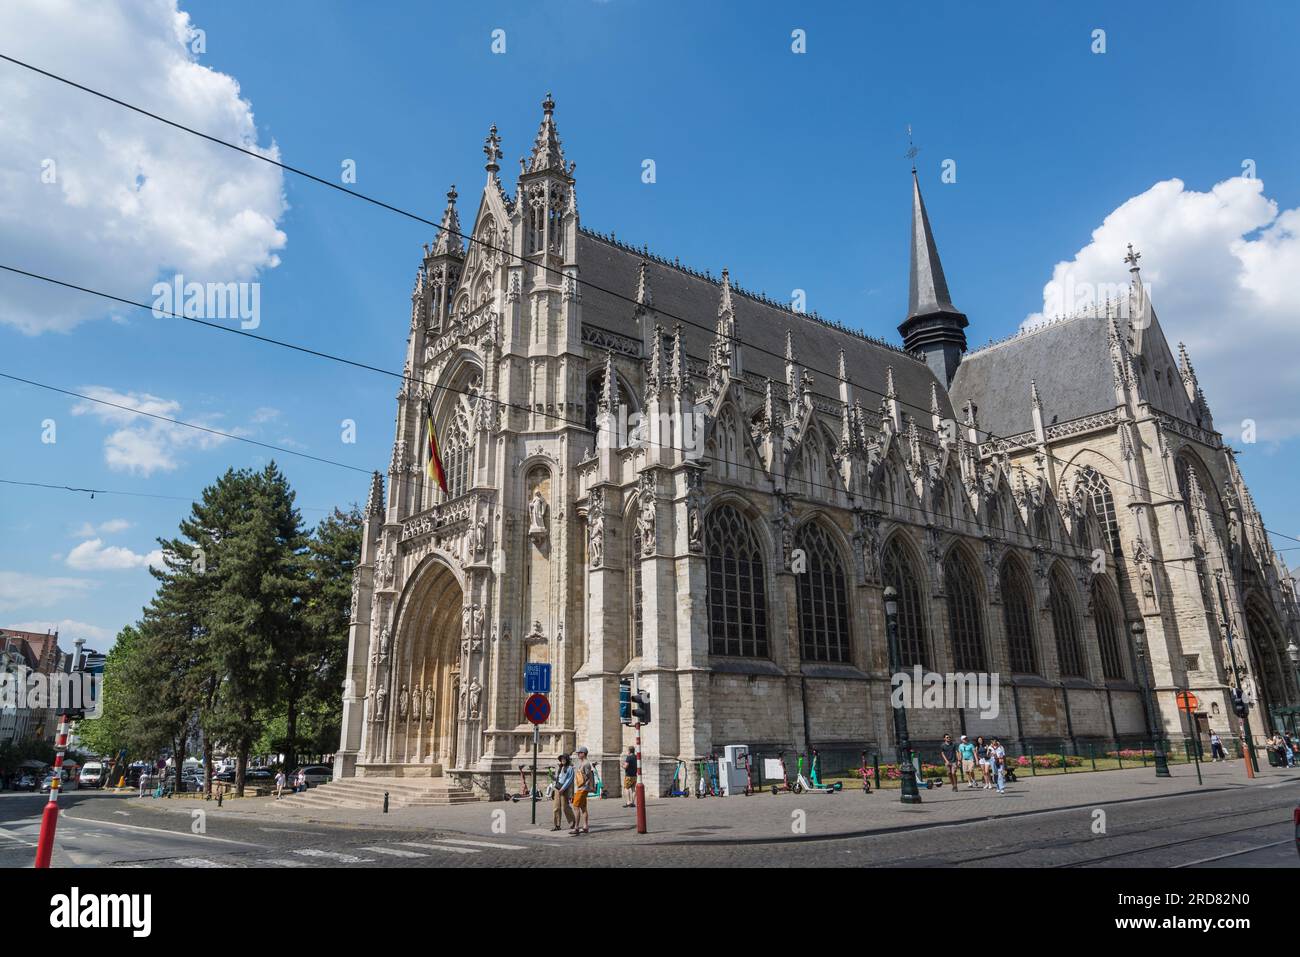 Église notre-Dame des victoires au Sablon, église catholique romaine construite en style gothique au 15e siècle, Bruxelles, Belgique, Bruxelles, Belgique Banque D'Images